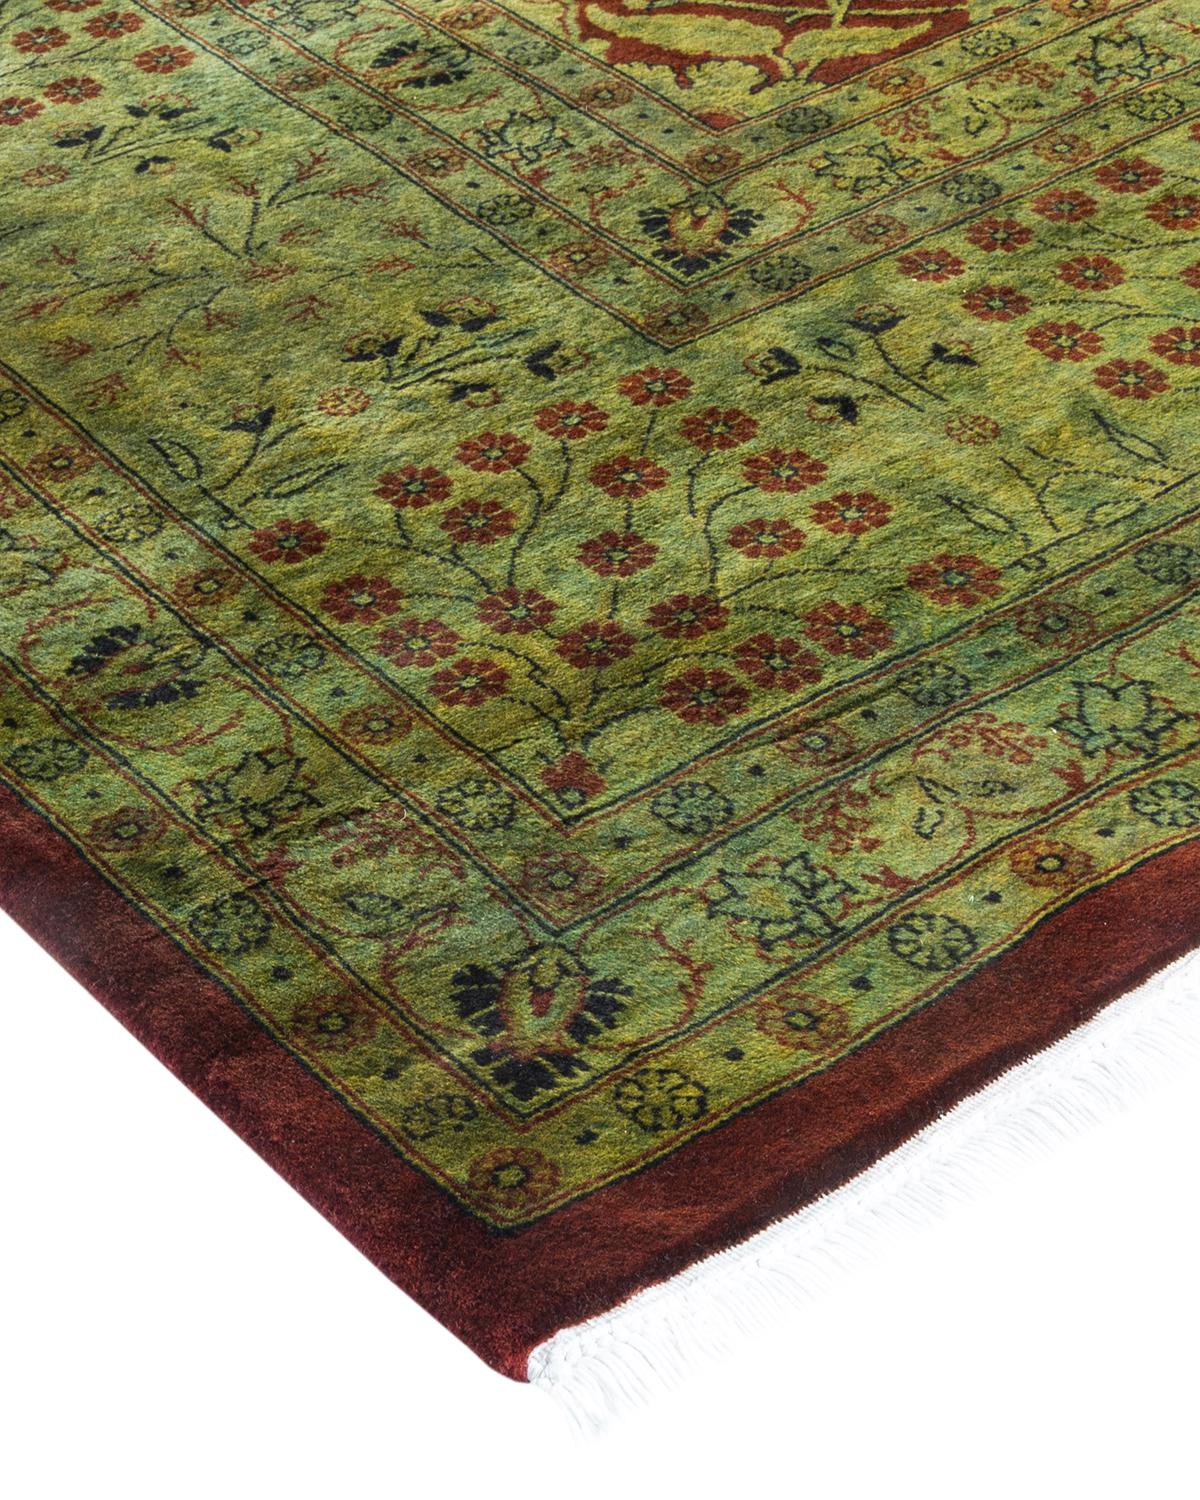 Vibrance-Teppiche sind der Inbegriff von Klassik mit Pfiff: Traditionelle Muster, die in leuchtenden Farben gefärbt sind. Jeder handgeknüpfte Teppich wird mit einem 100 % natürlichen botanischen Farbstoff gewaschen, der verborgene Nuancen in den